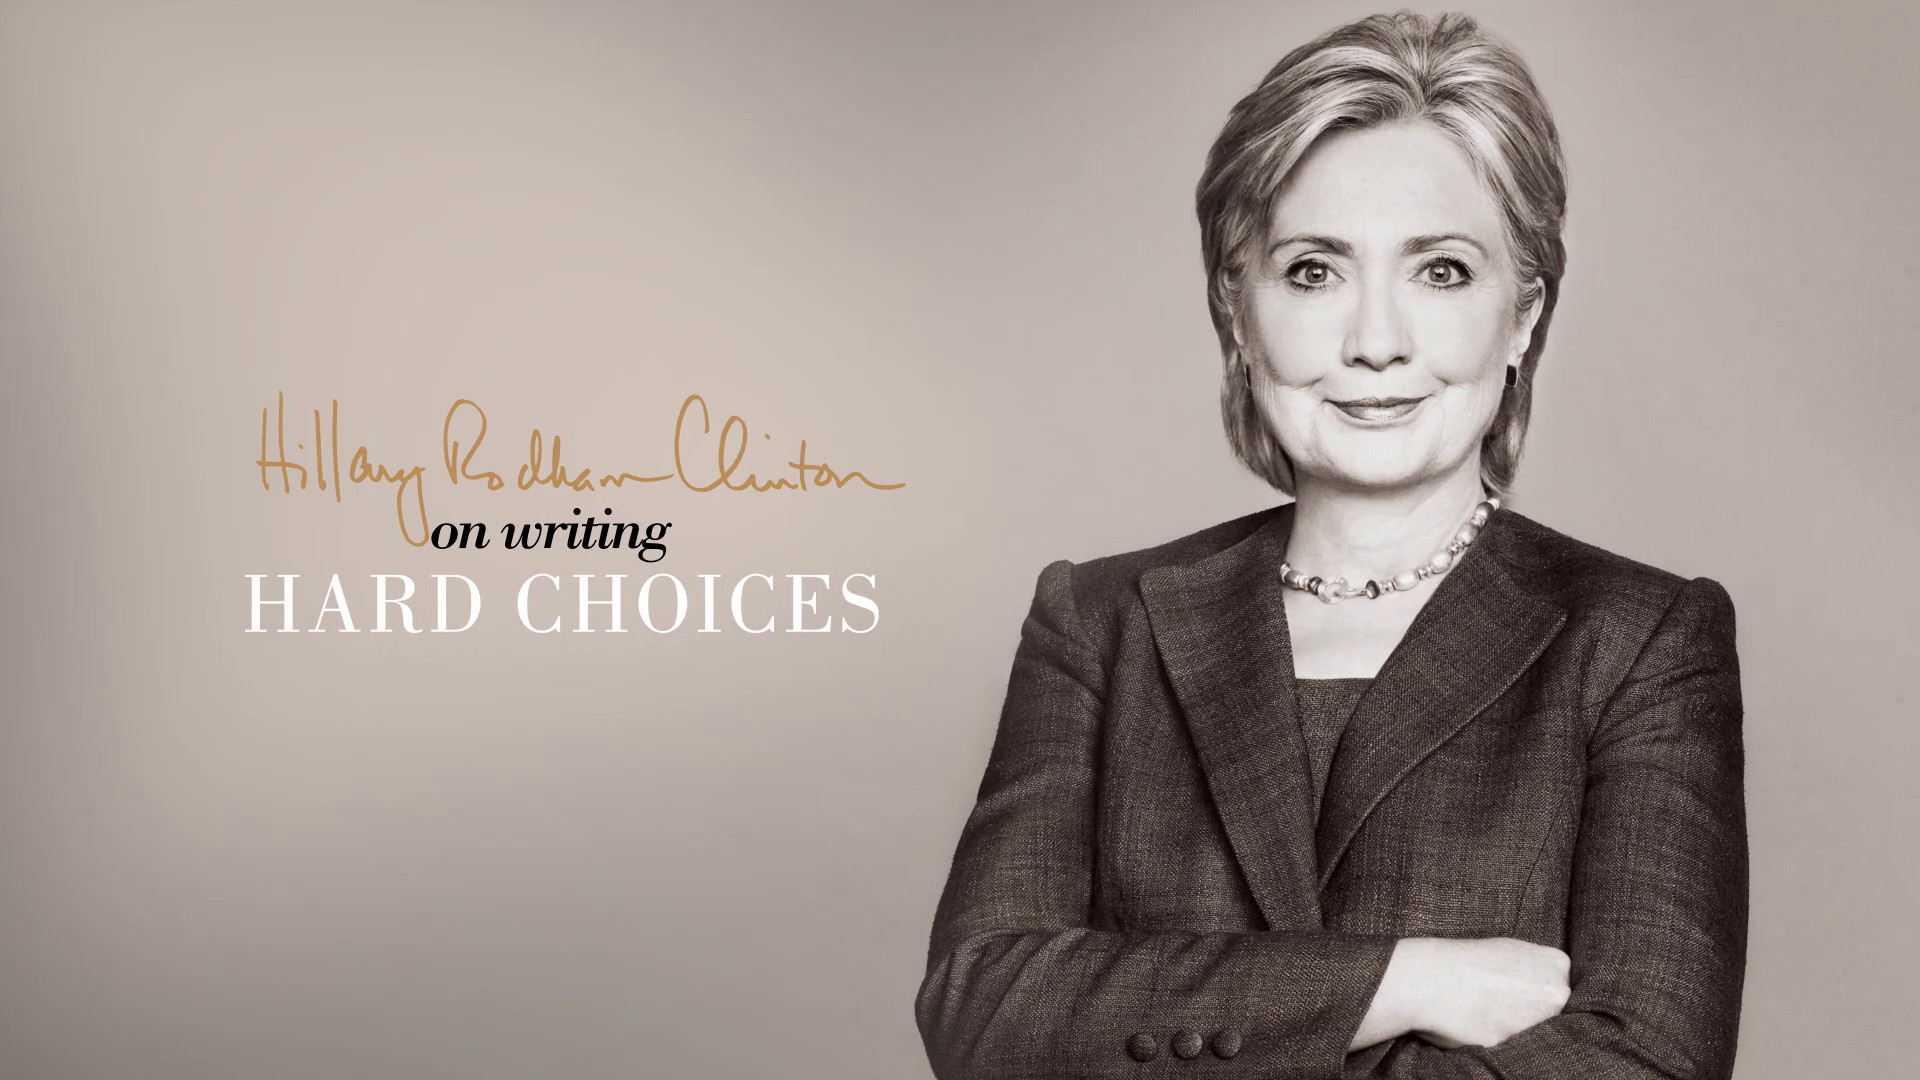 1920x1080 Hillary Clinton on Writing Hard Choices